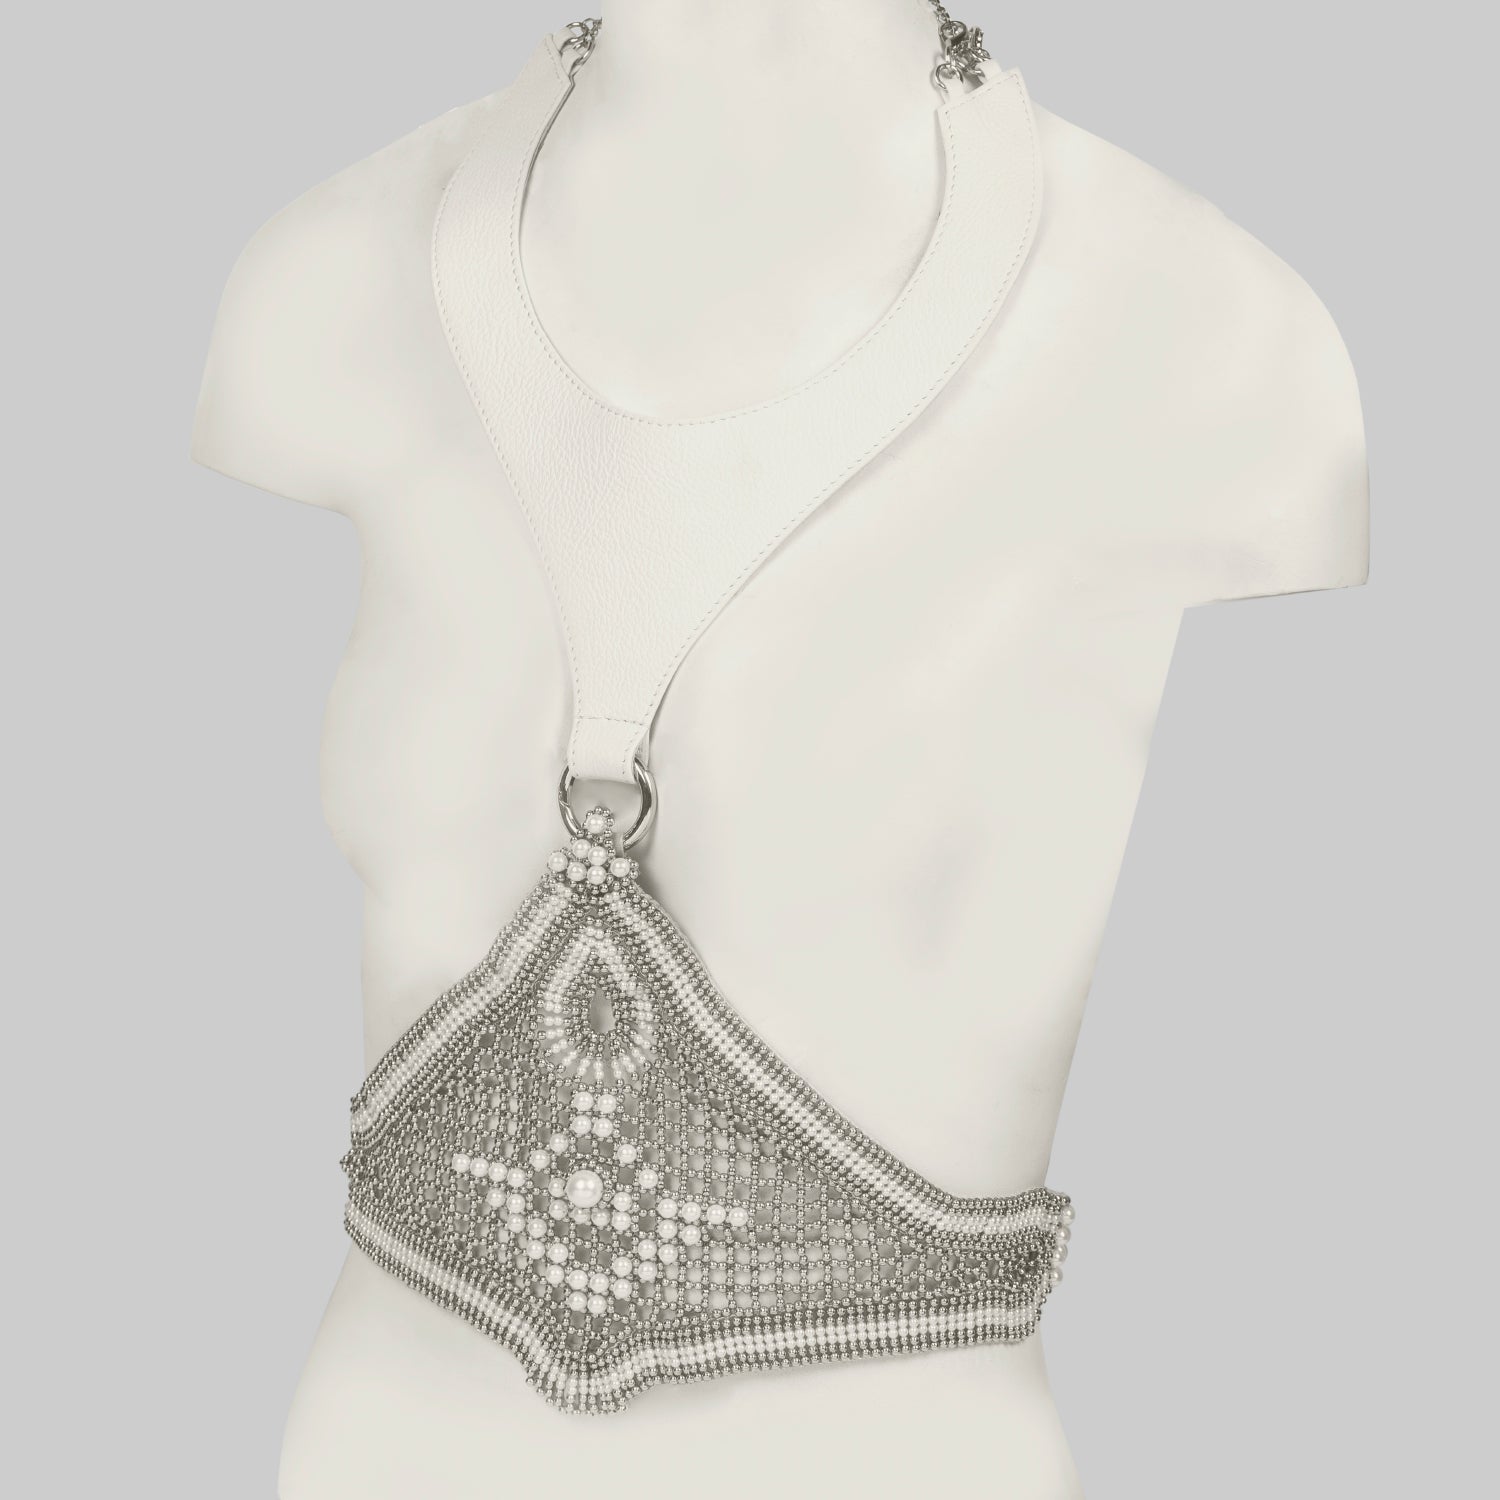 Khutulun Modular Bodice w/Leather in Pearl